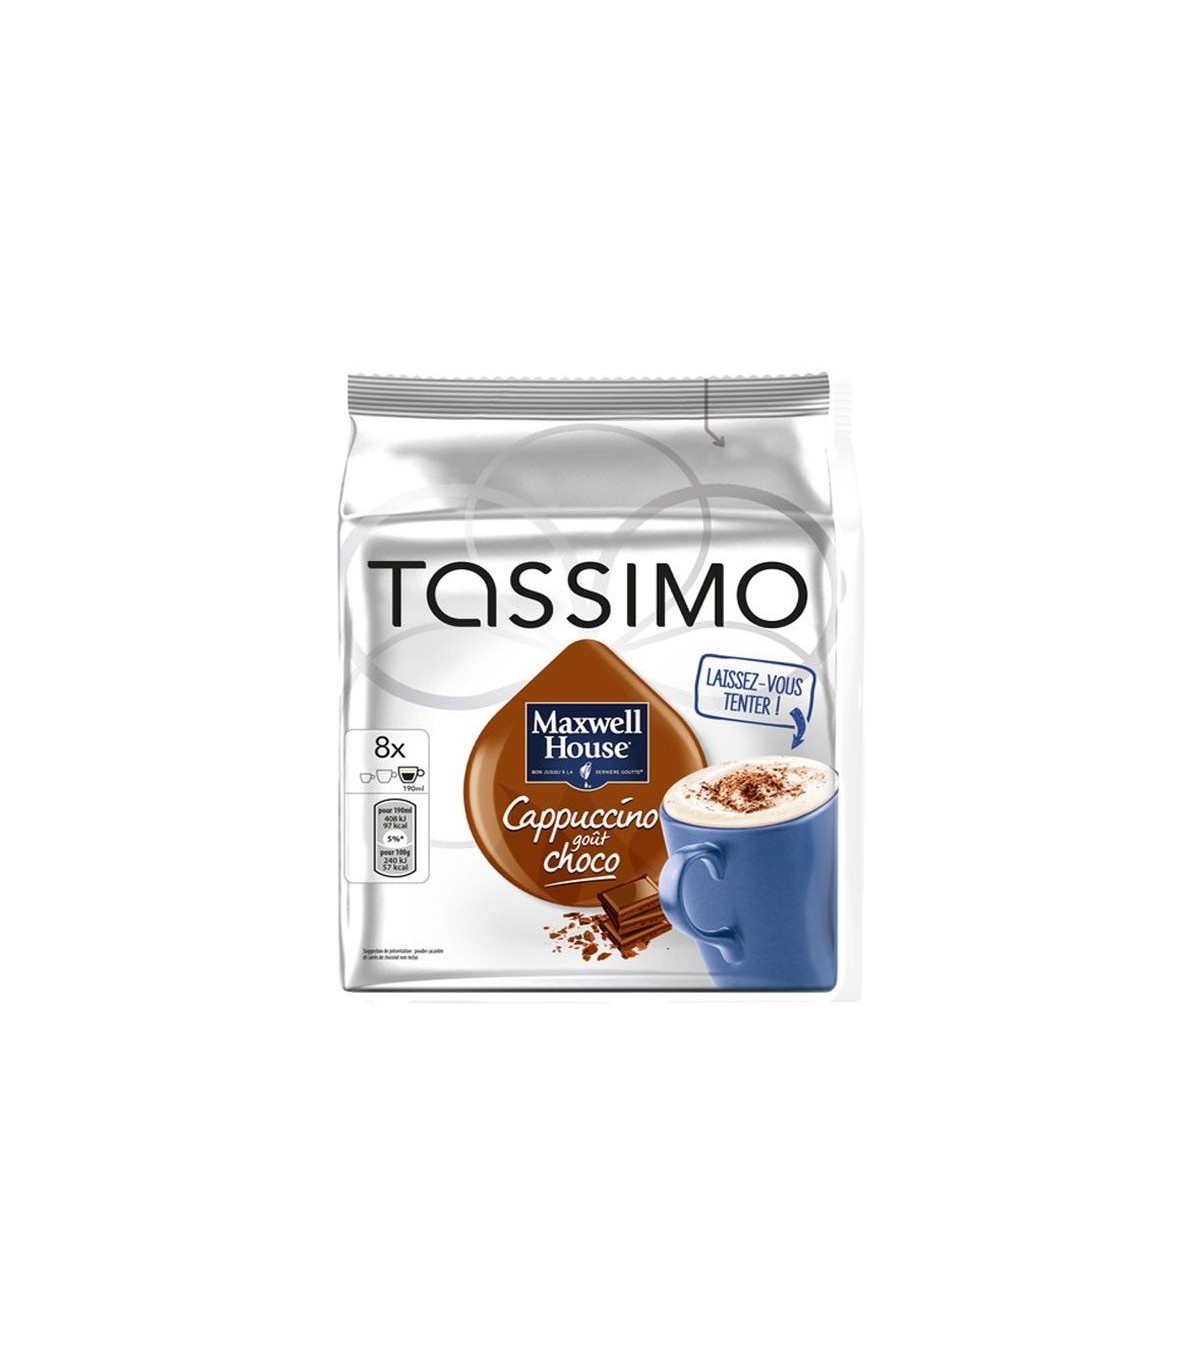 Dosette café Tassimo L'Or Café Long Classique x16